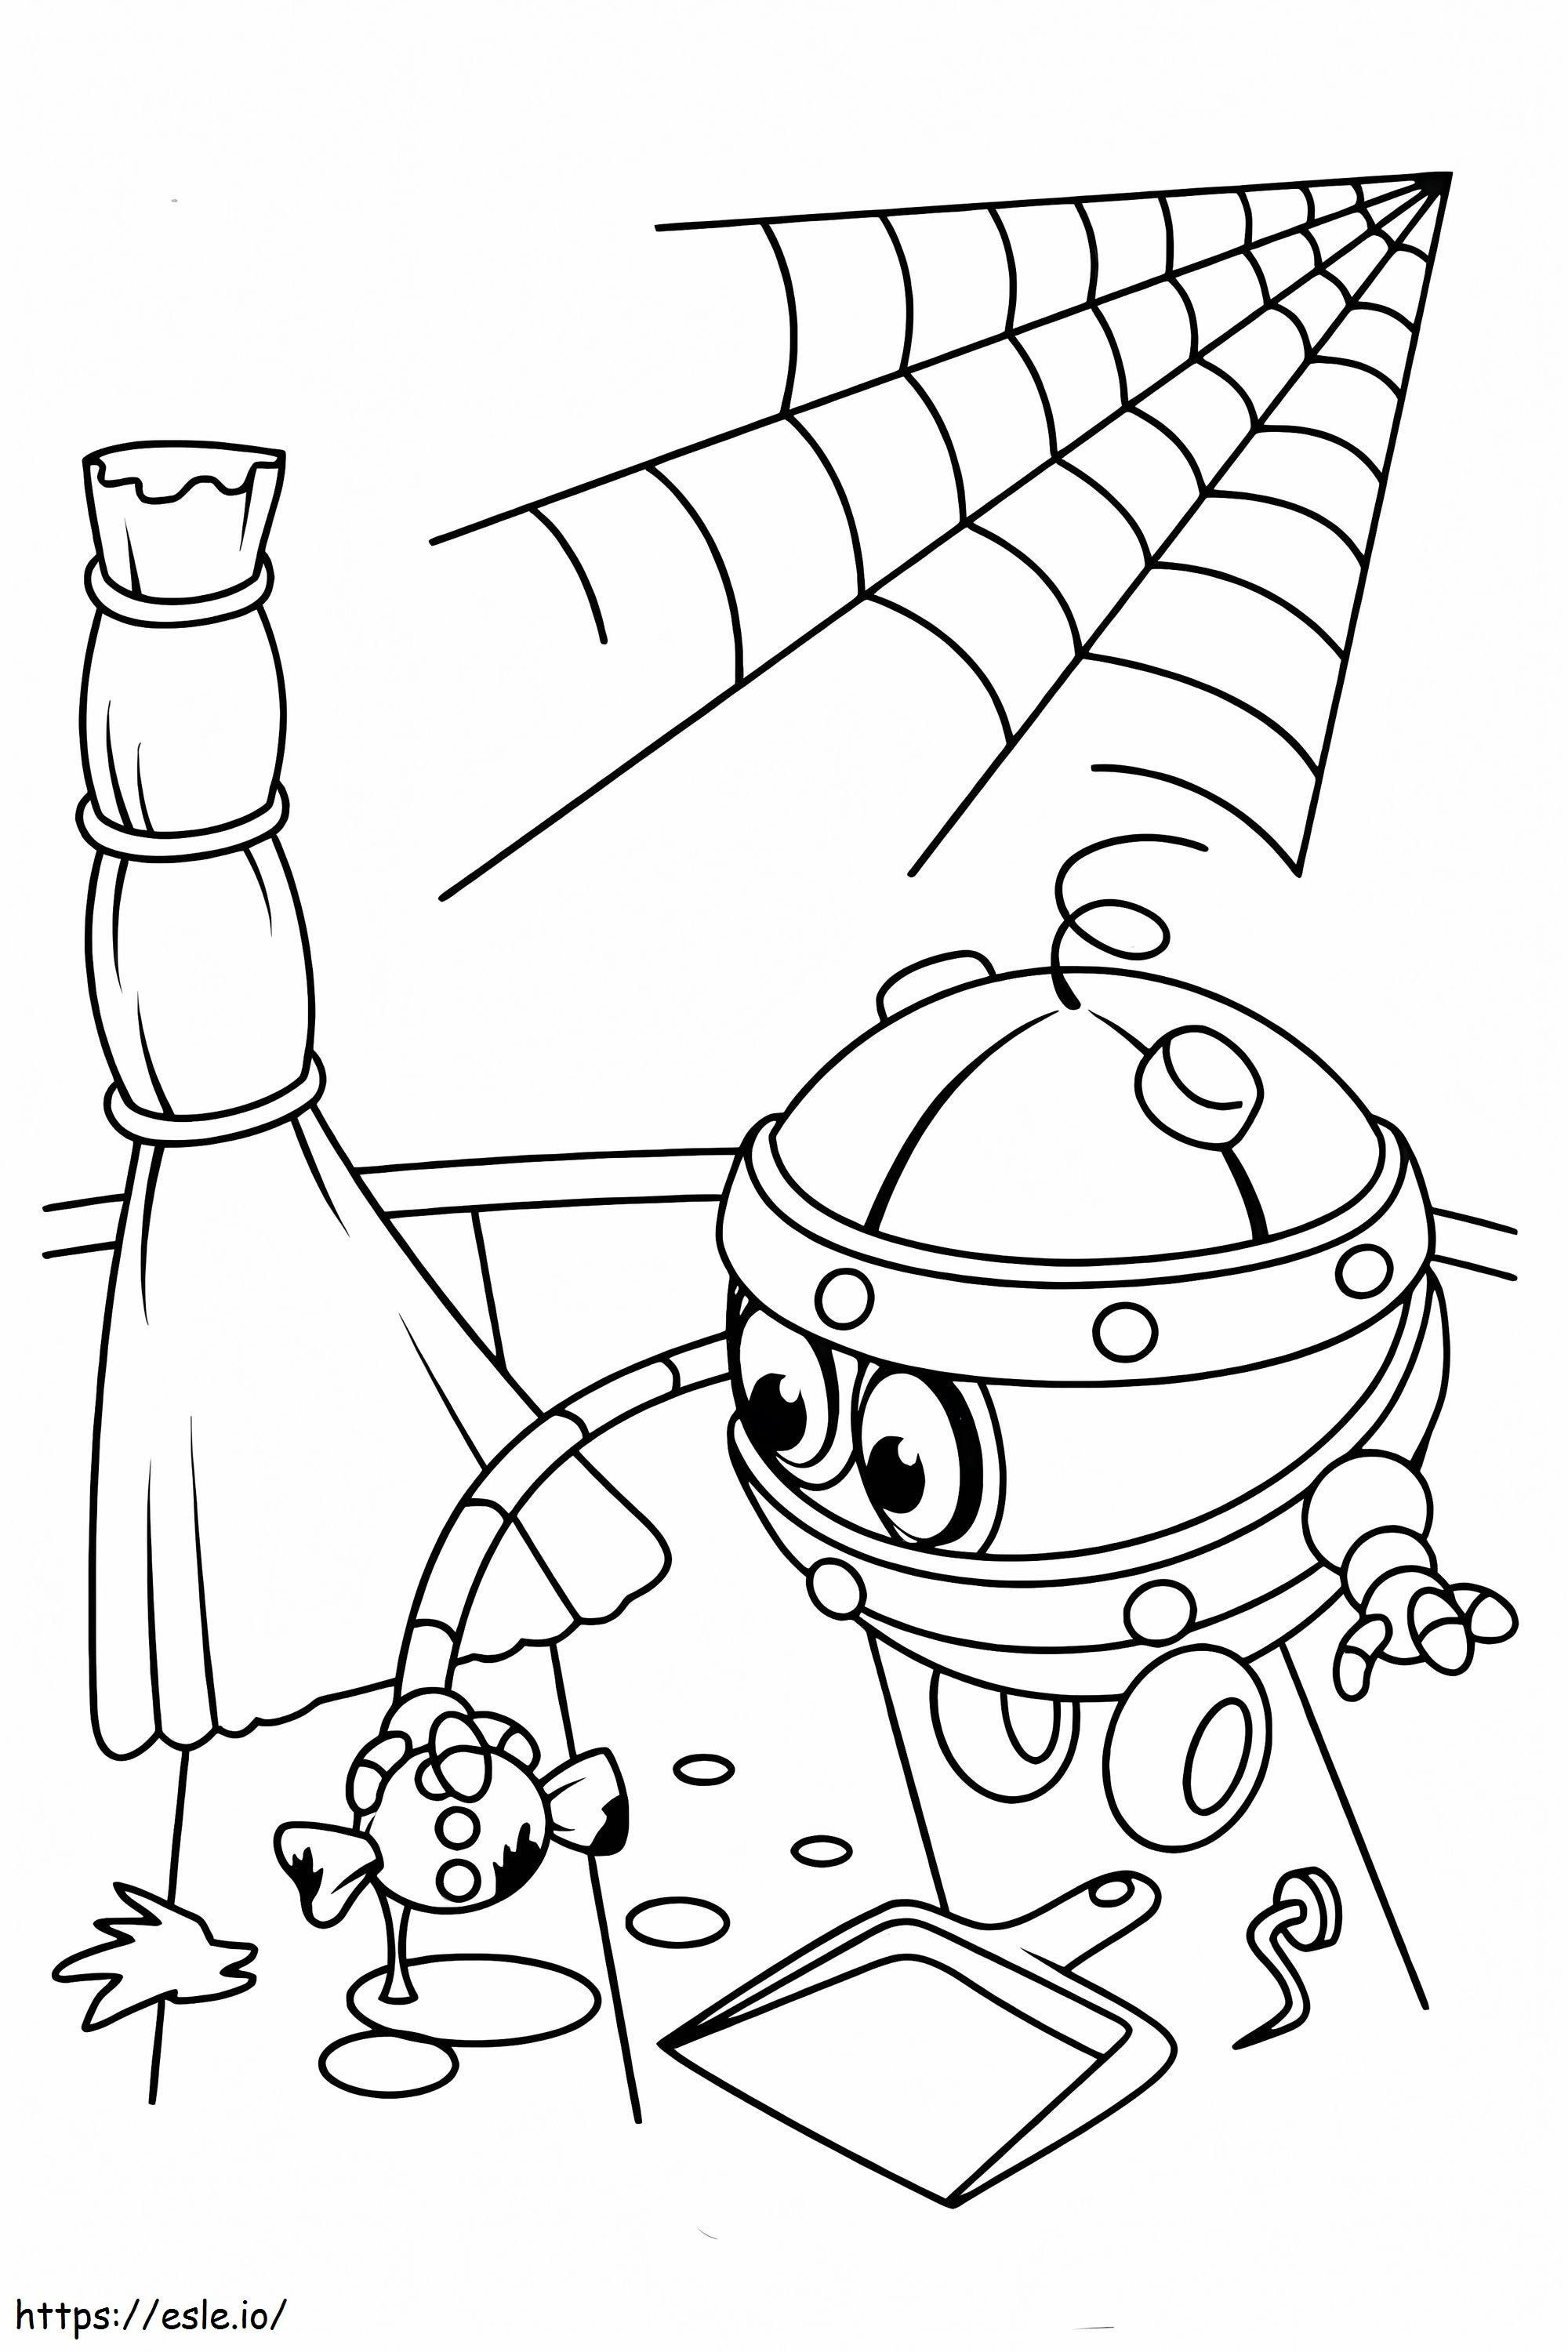 Fertilizer Robot coloring page